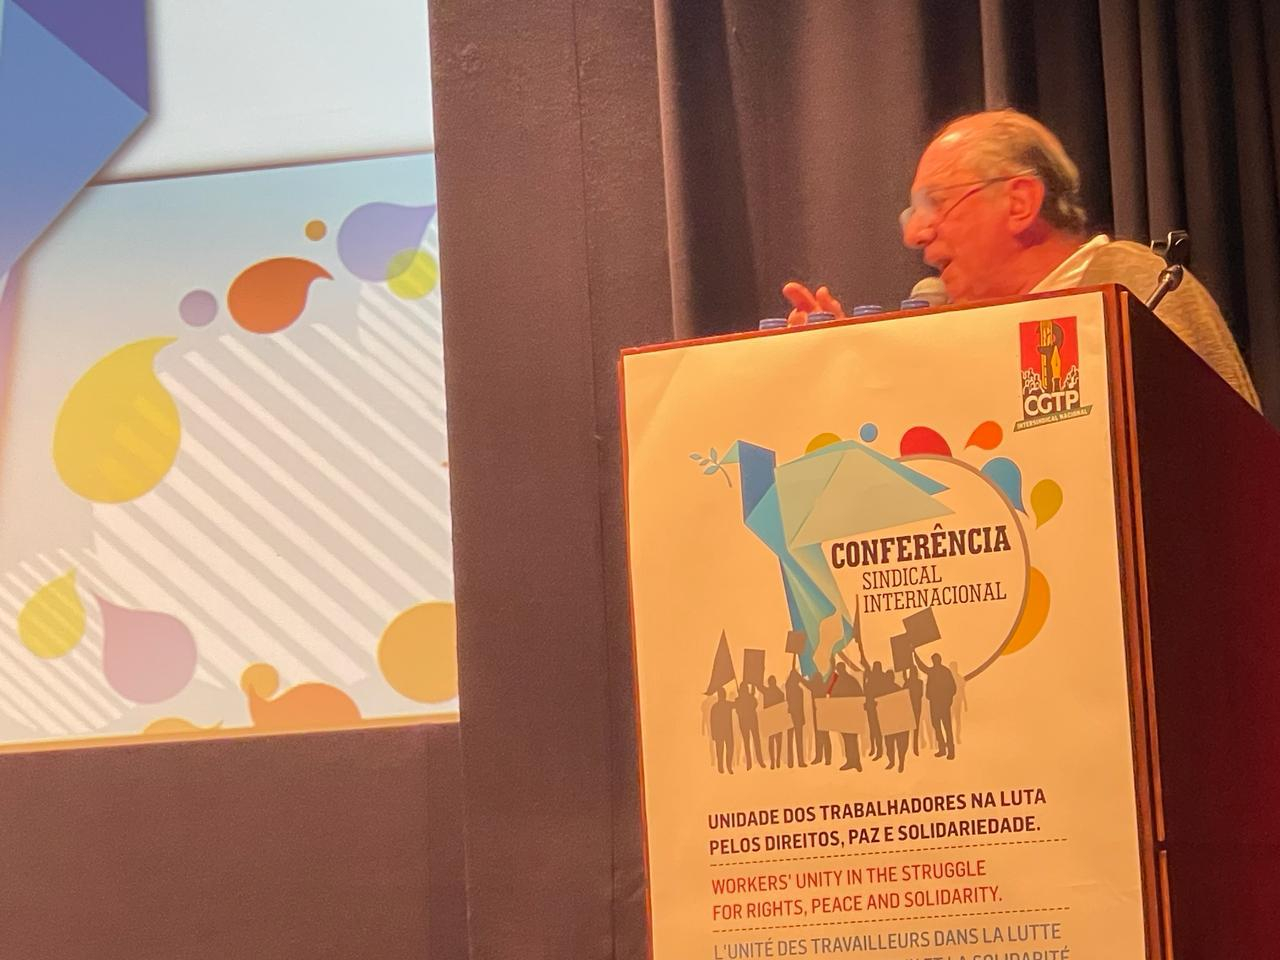 Presidente da UGT participa da abertura Conferência Sindical Internacional, em Portugal